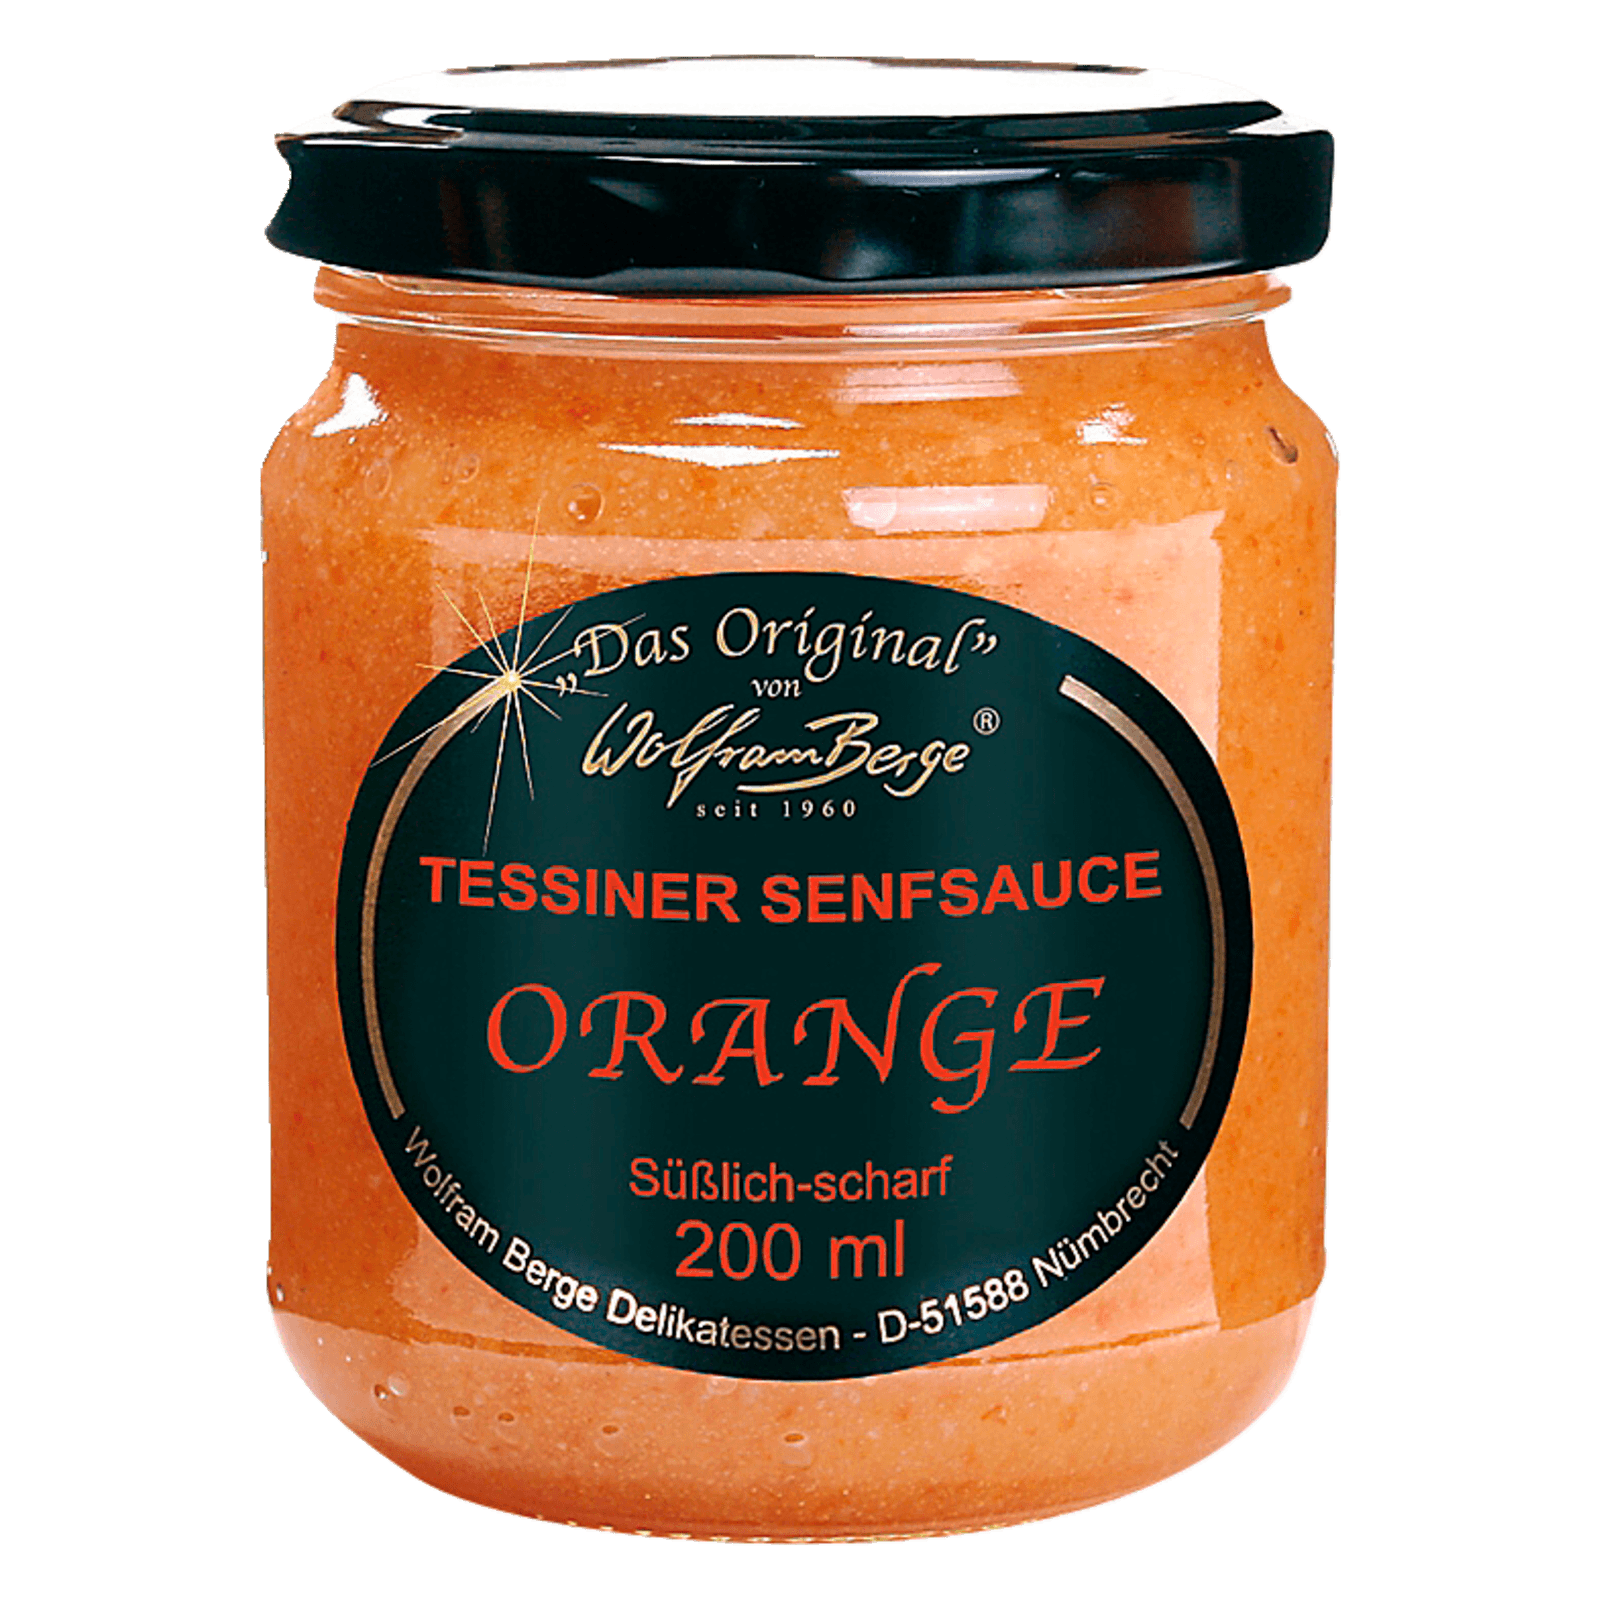 Wolfram Berge Tessiner Senfsauce Orange 200ml bei REWE online bestellen!